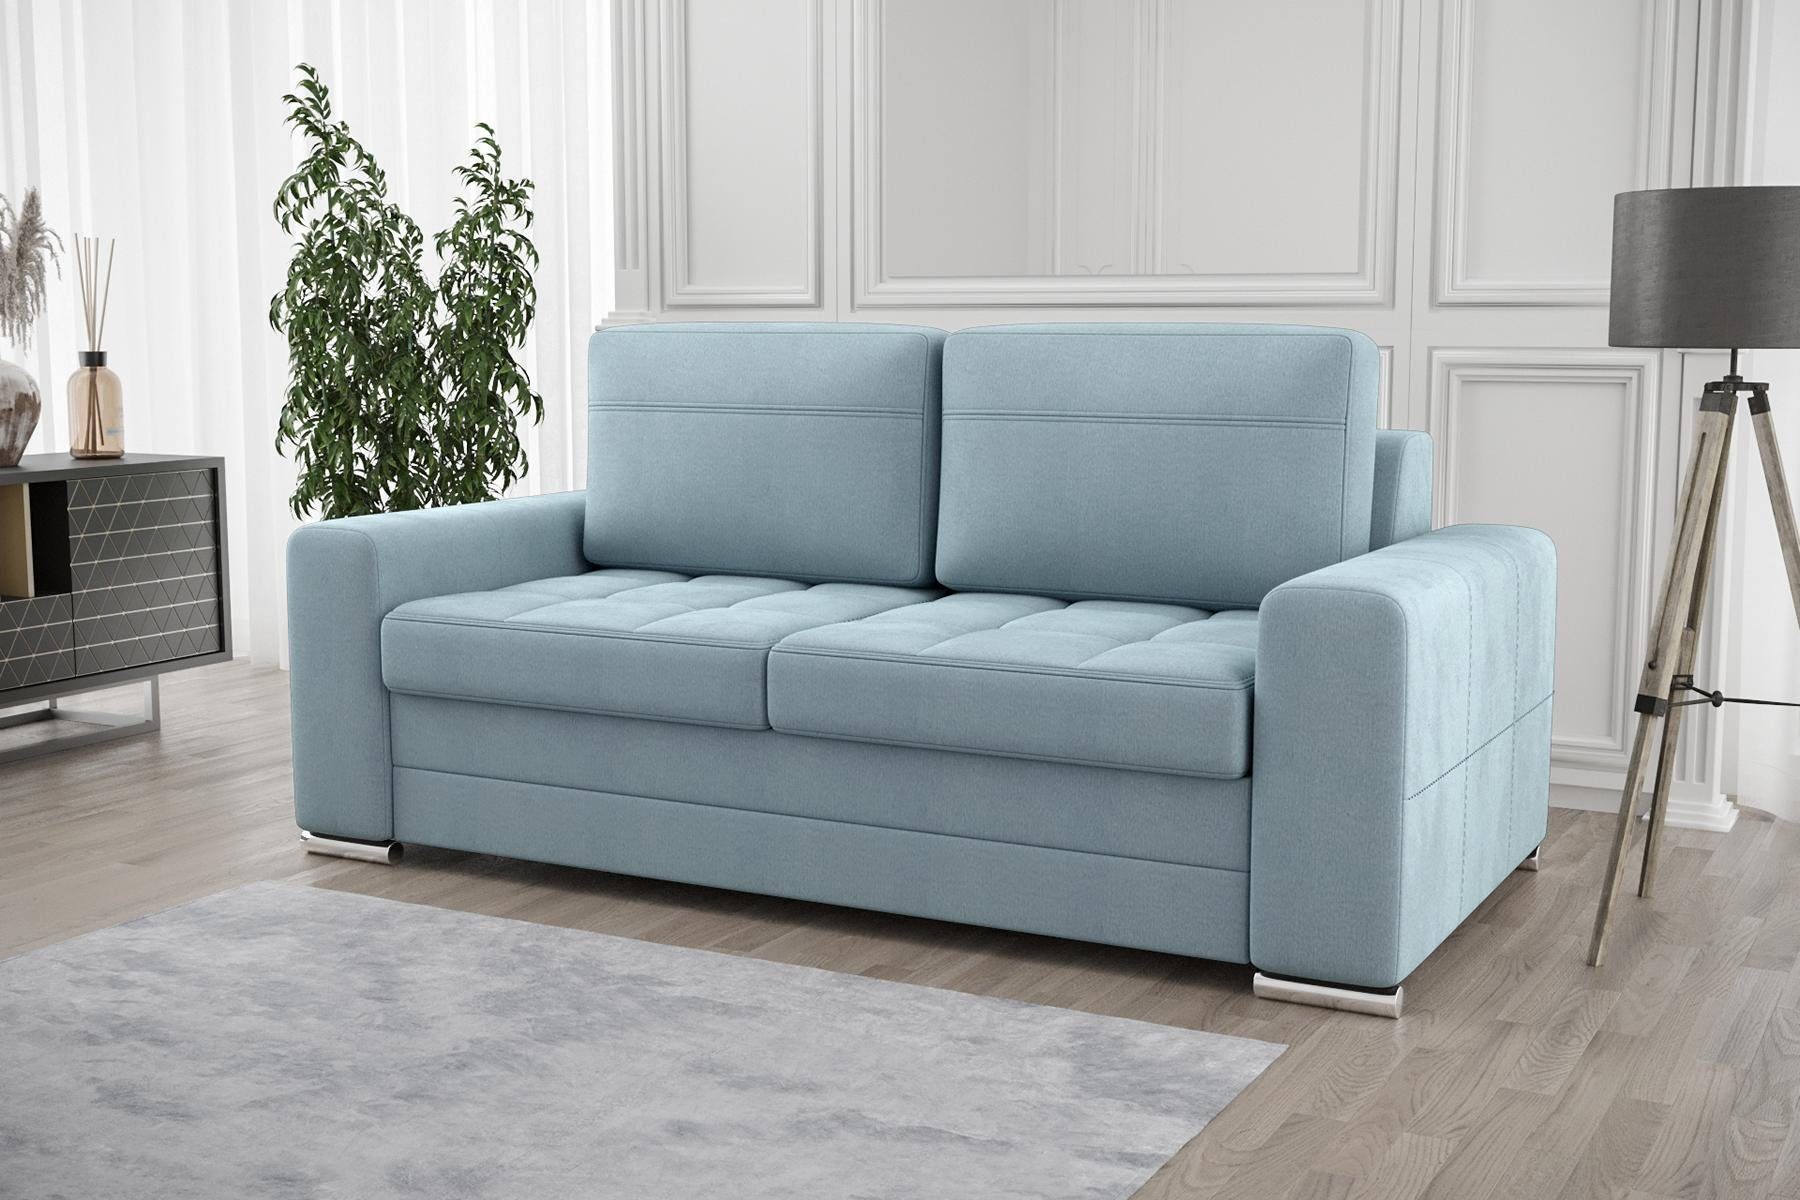 JVmoebel Sofa Design Polster Modern 100% Textil Stoff Modern Zweisitzer, Made in Europe Blau